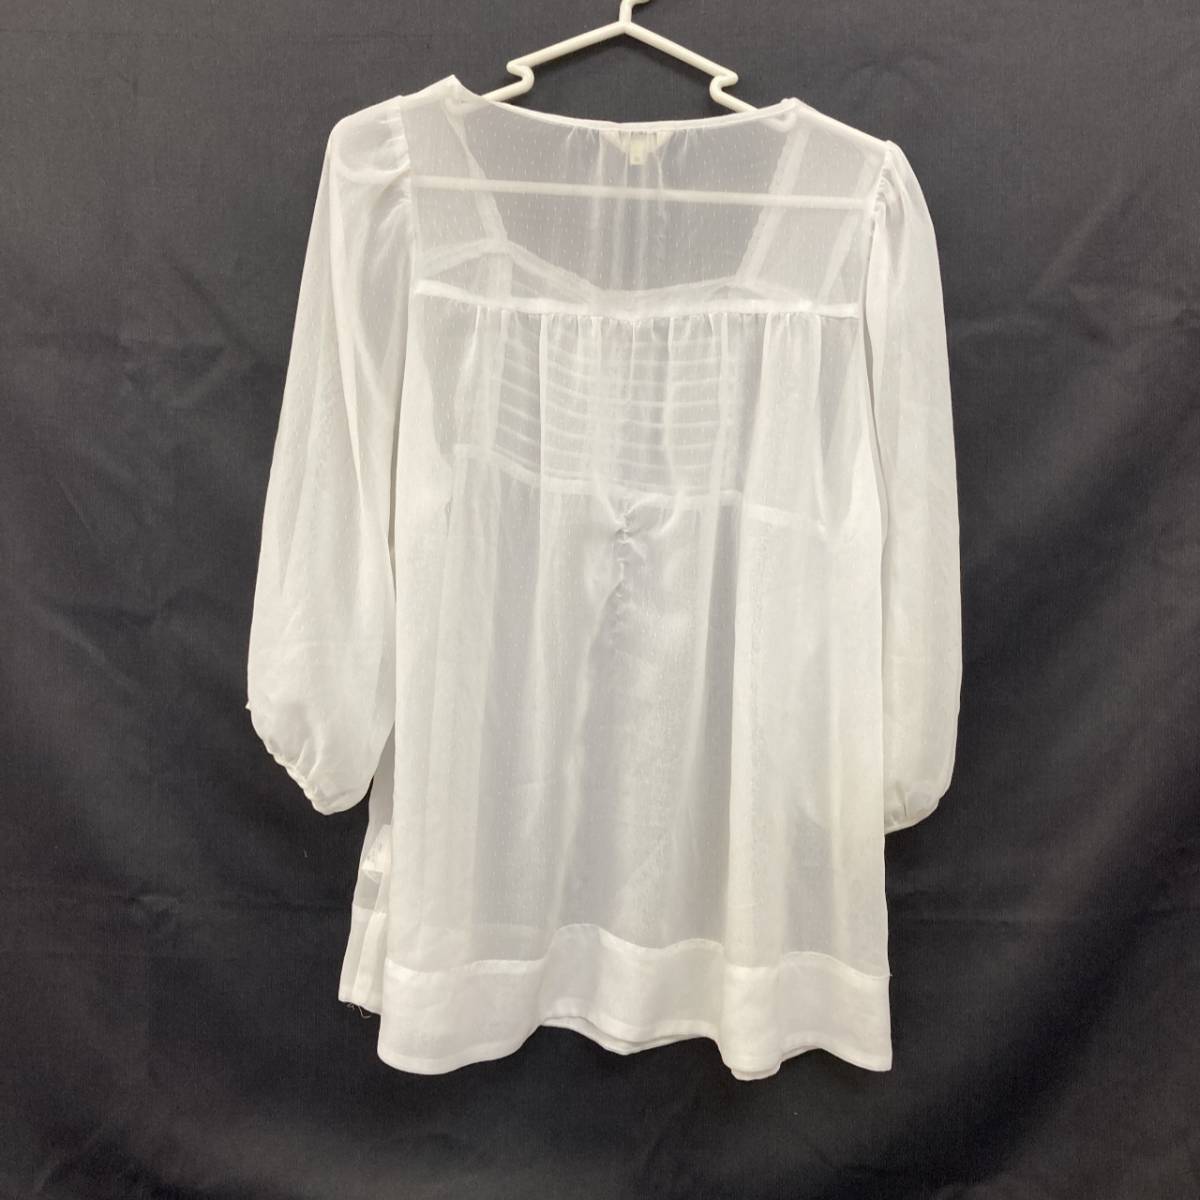 HusHusH HusHush короткий рукав блуза белый 2(M размер соответствует ) женский 02